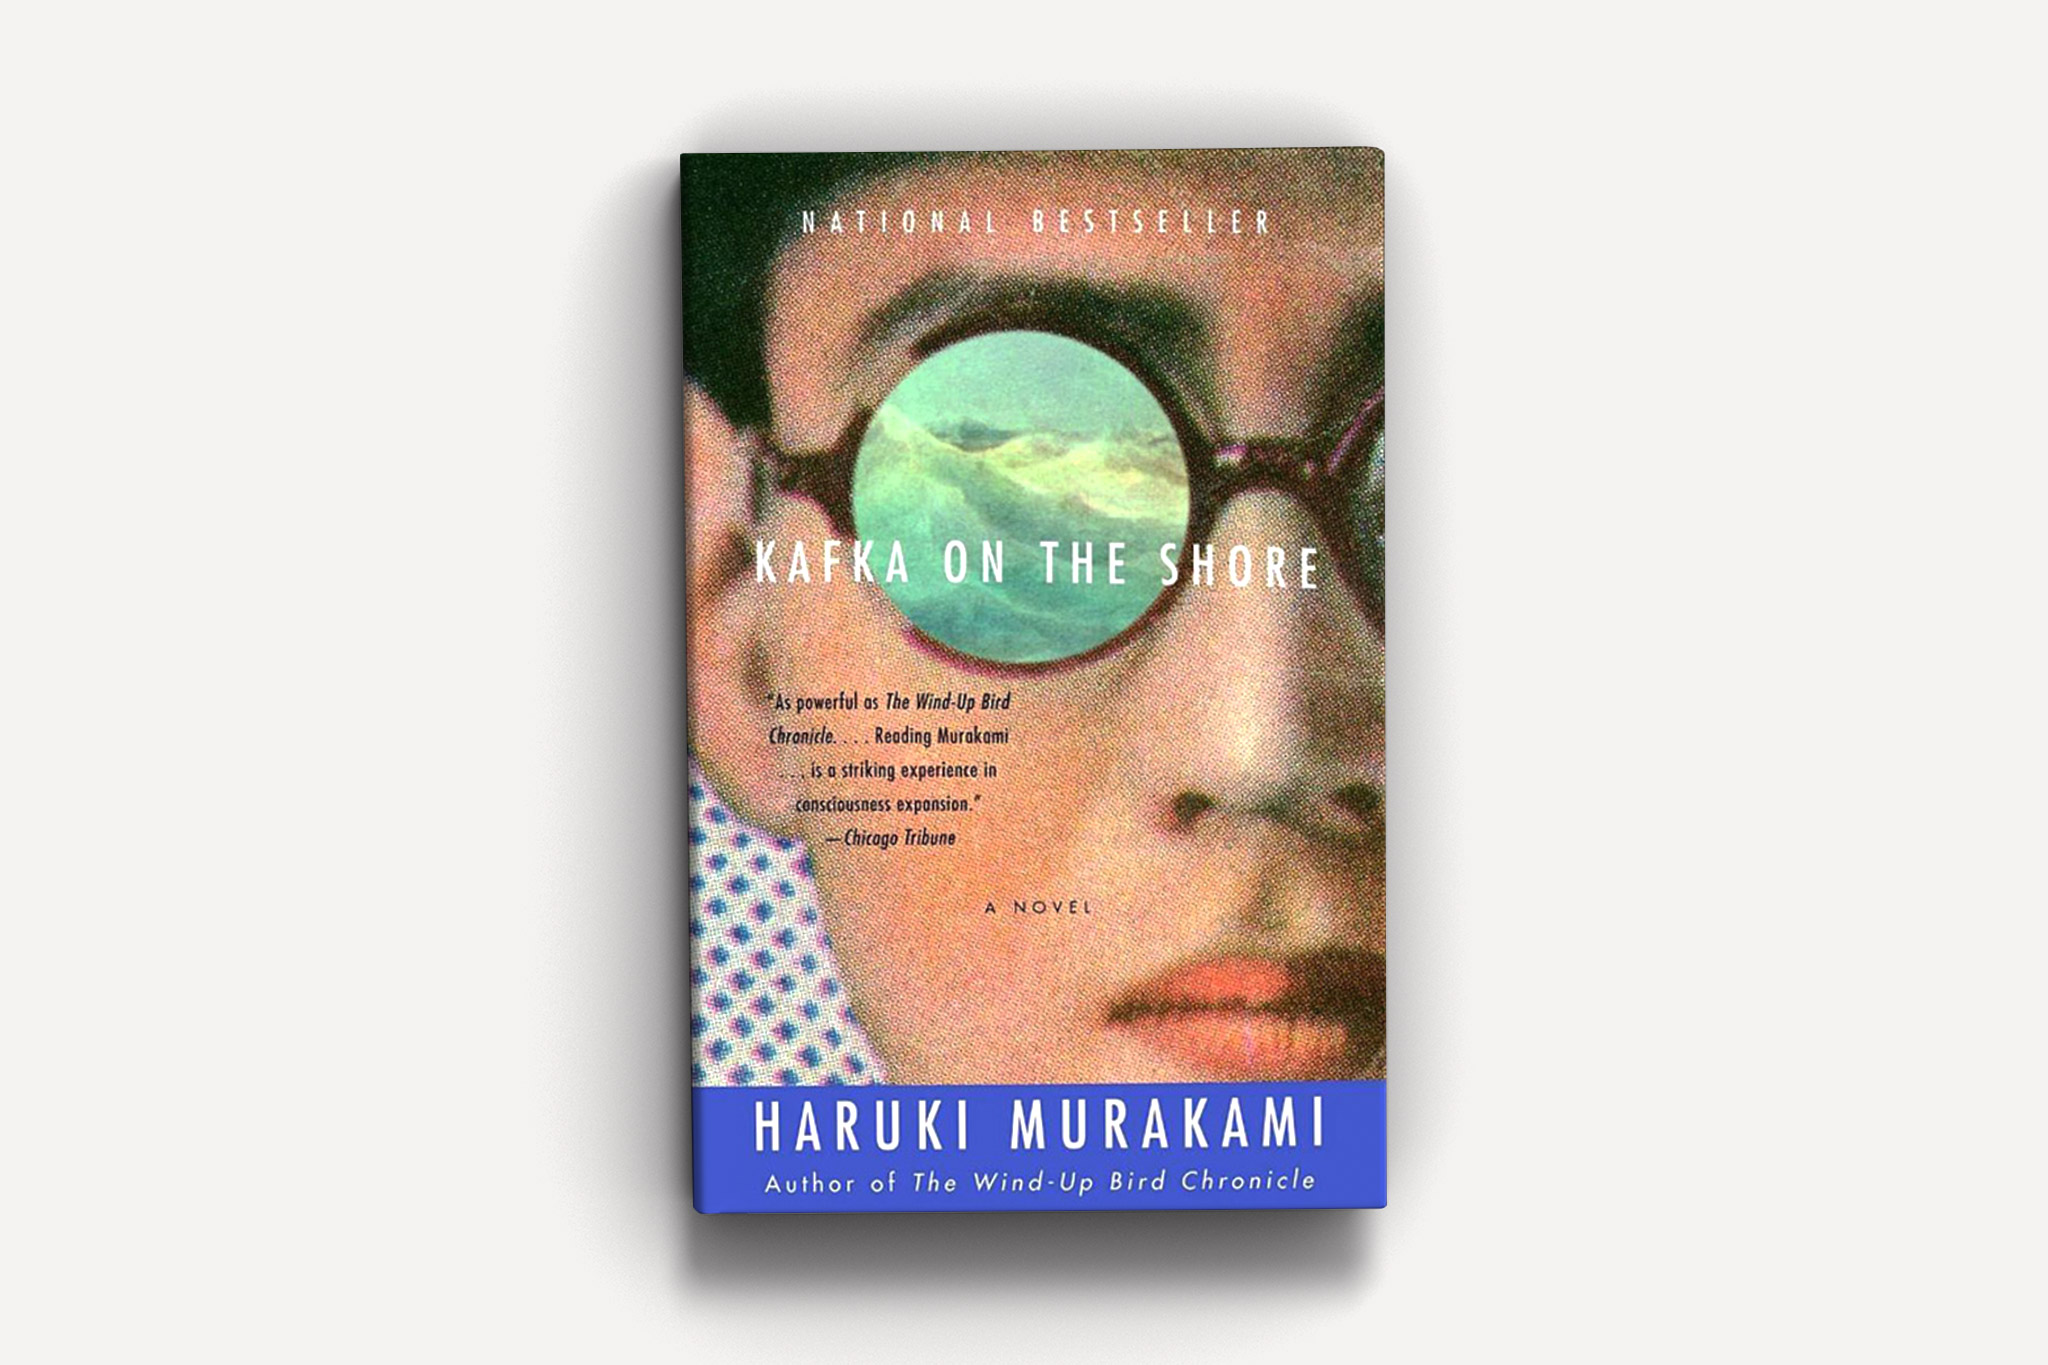 haruki murakami best books